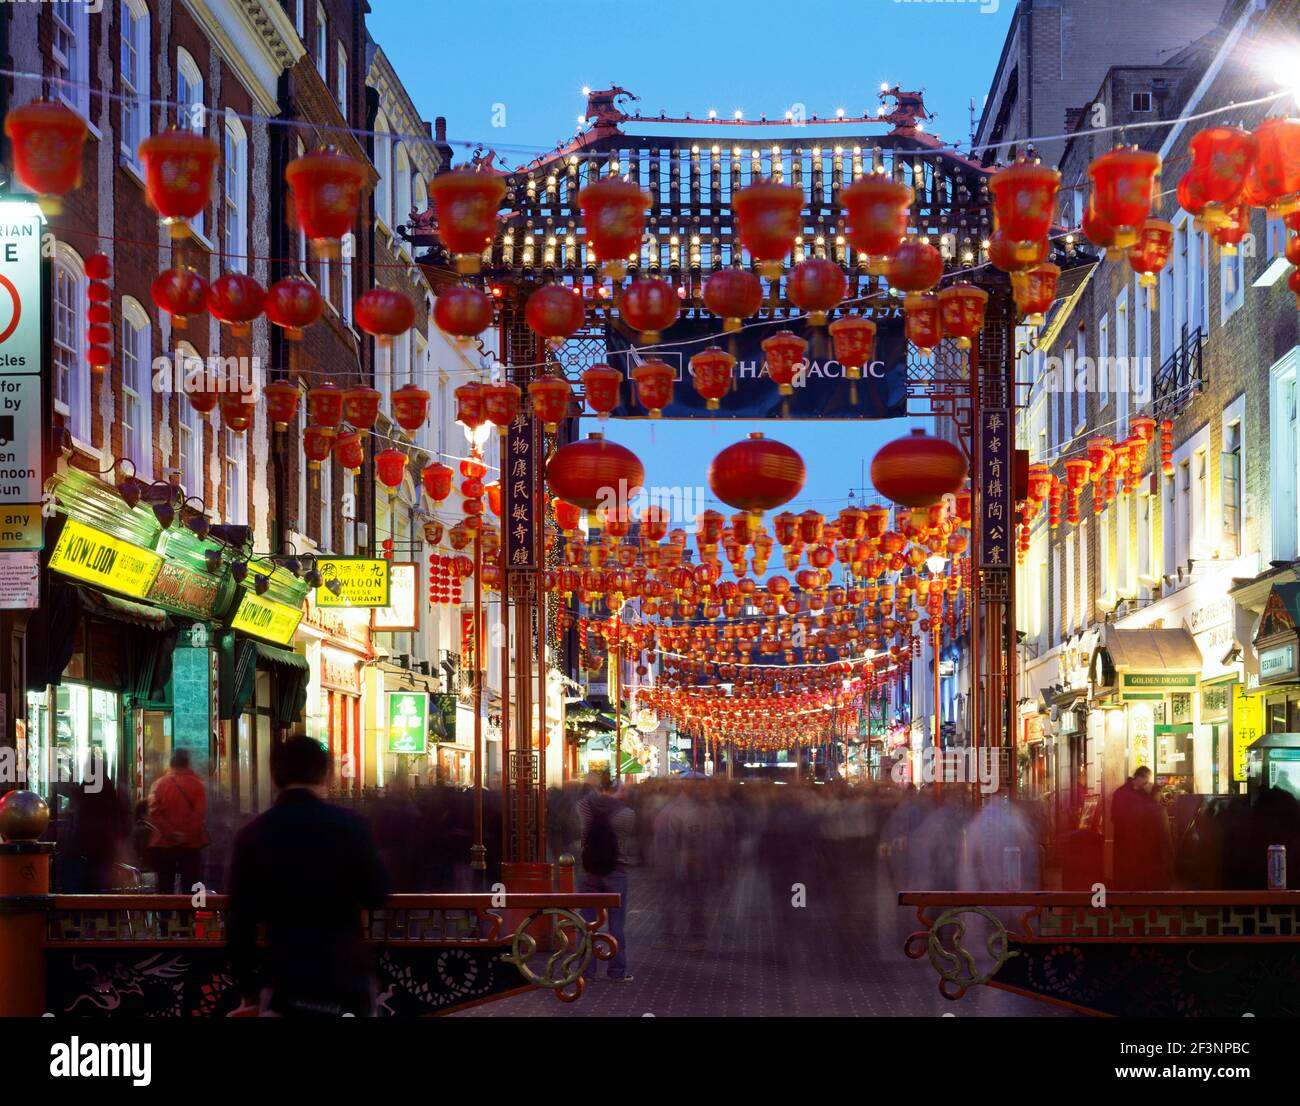 CHINATOWN, Gerrard Street, Londres. Vue générale de la ville de chine au crépuscule montrant la rue animée avec des lanternes rouges et la porte d'entrée. Banque D'Images